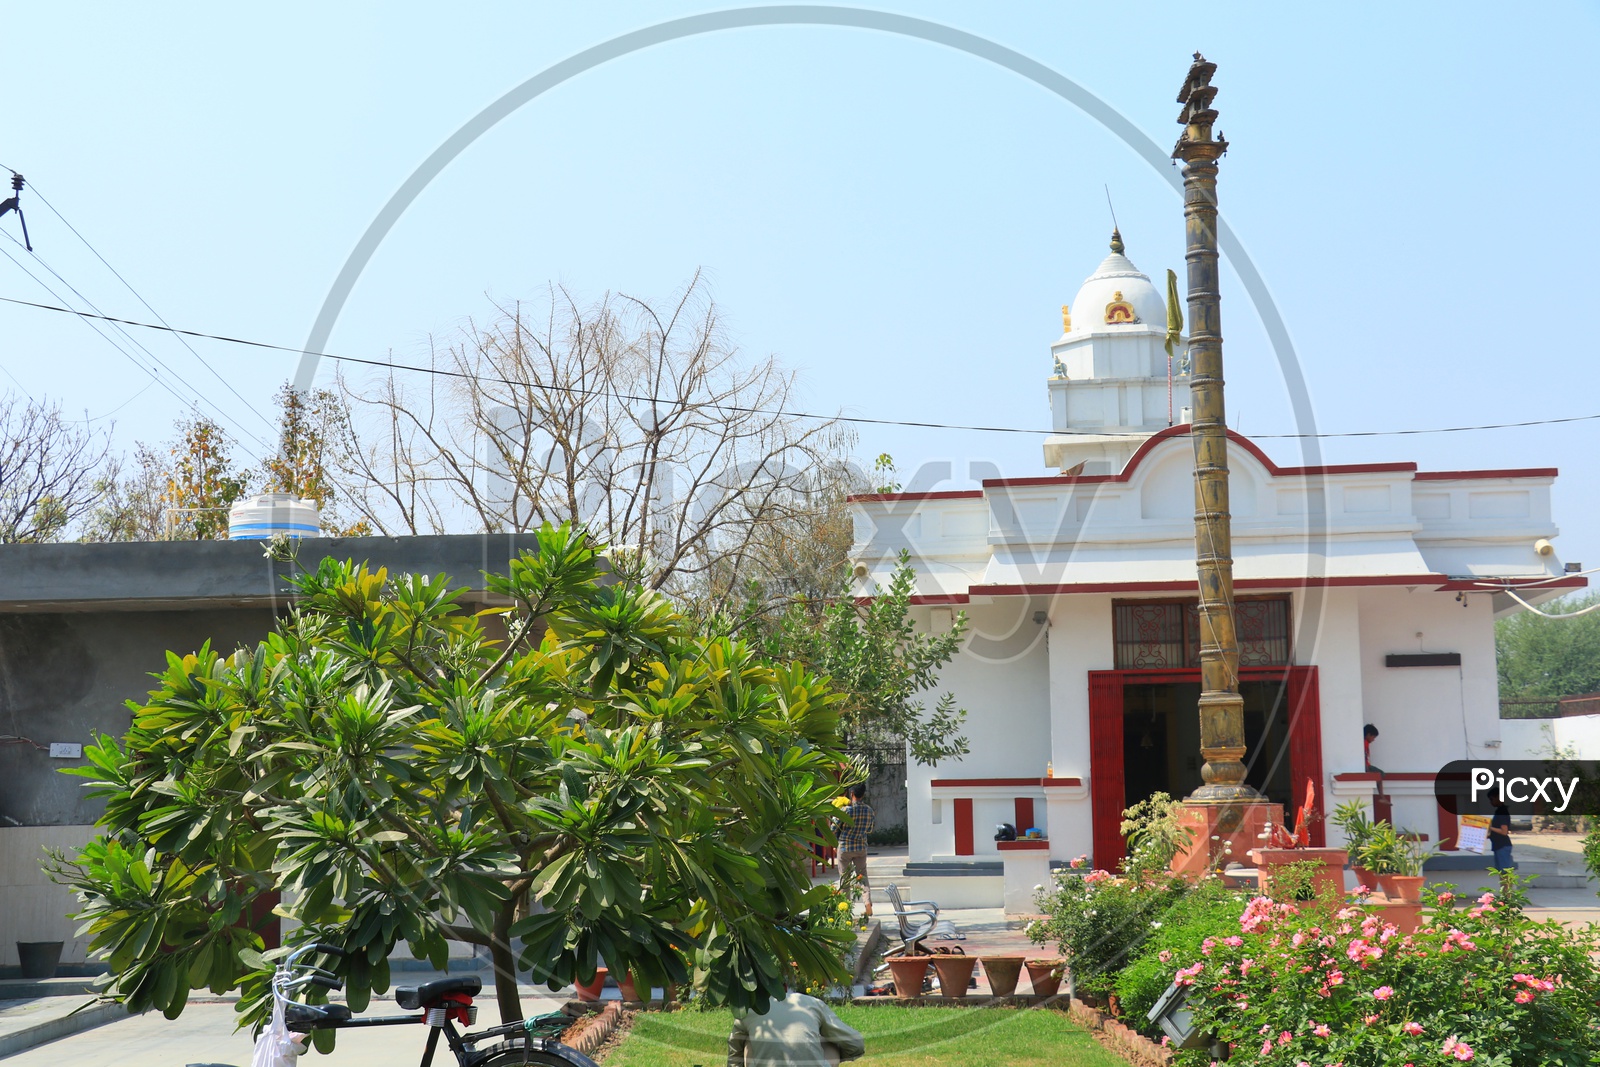 Sri Venkateshwara Temple